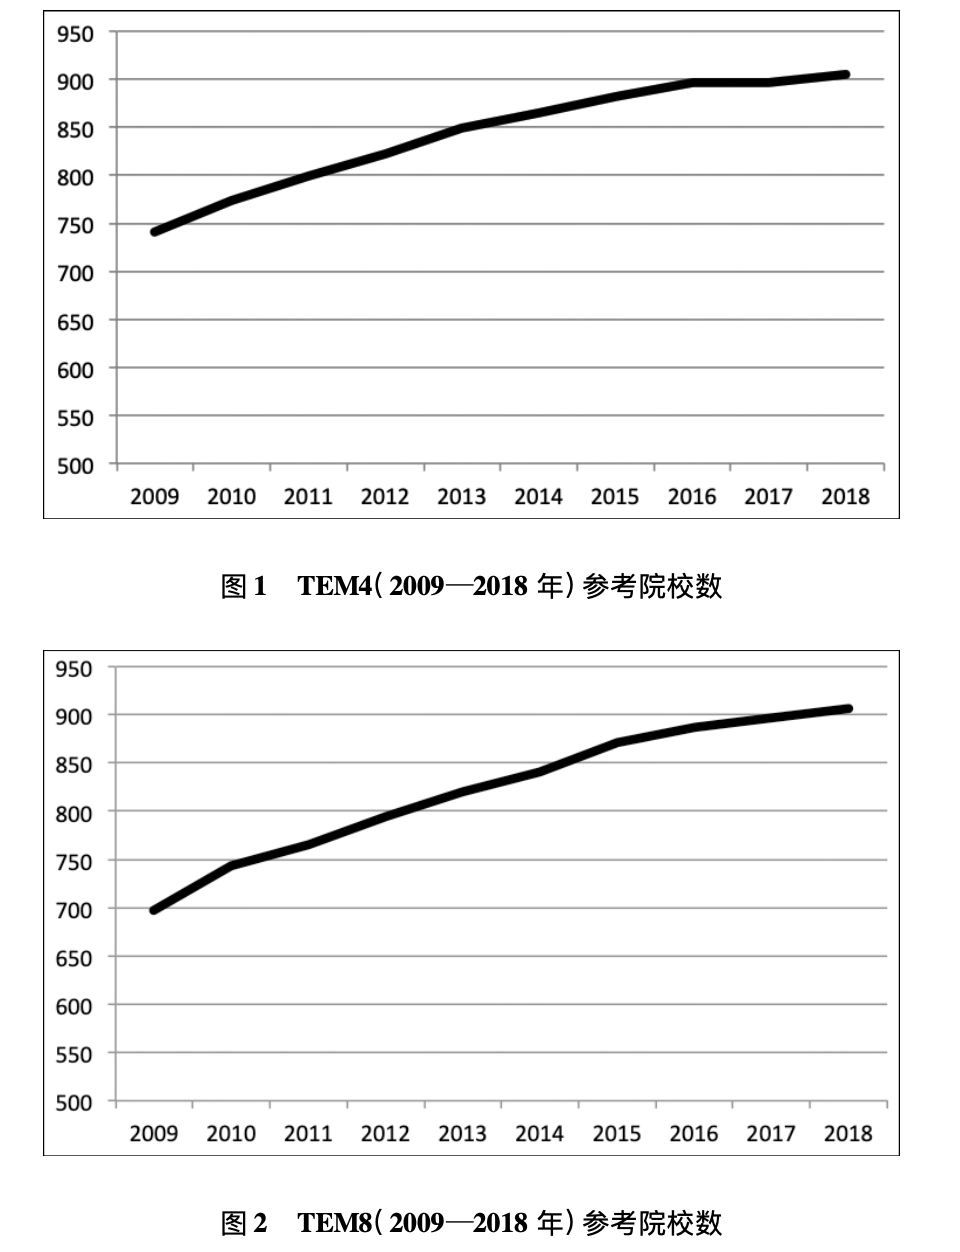 2009—2018年TEM4和TEM8参考院校的增长曲线